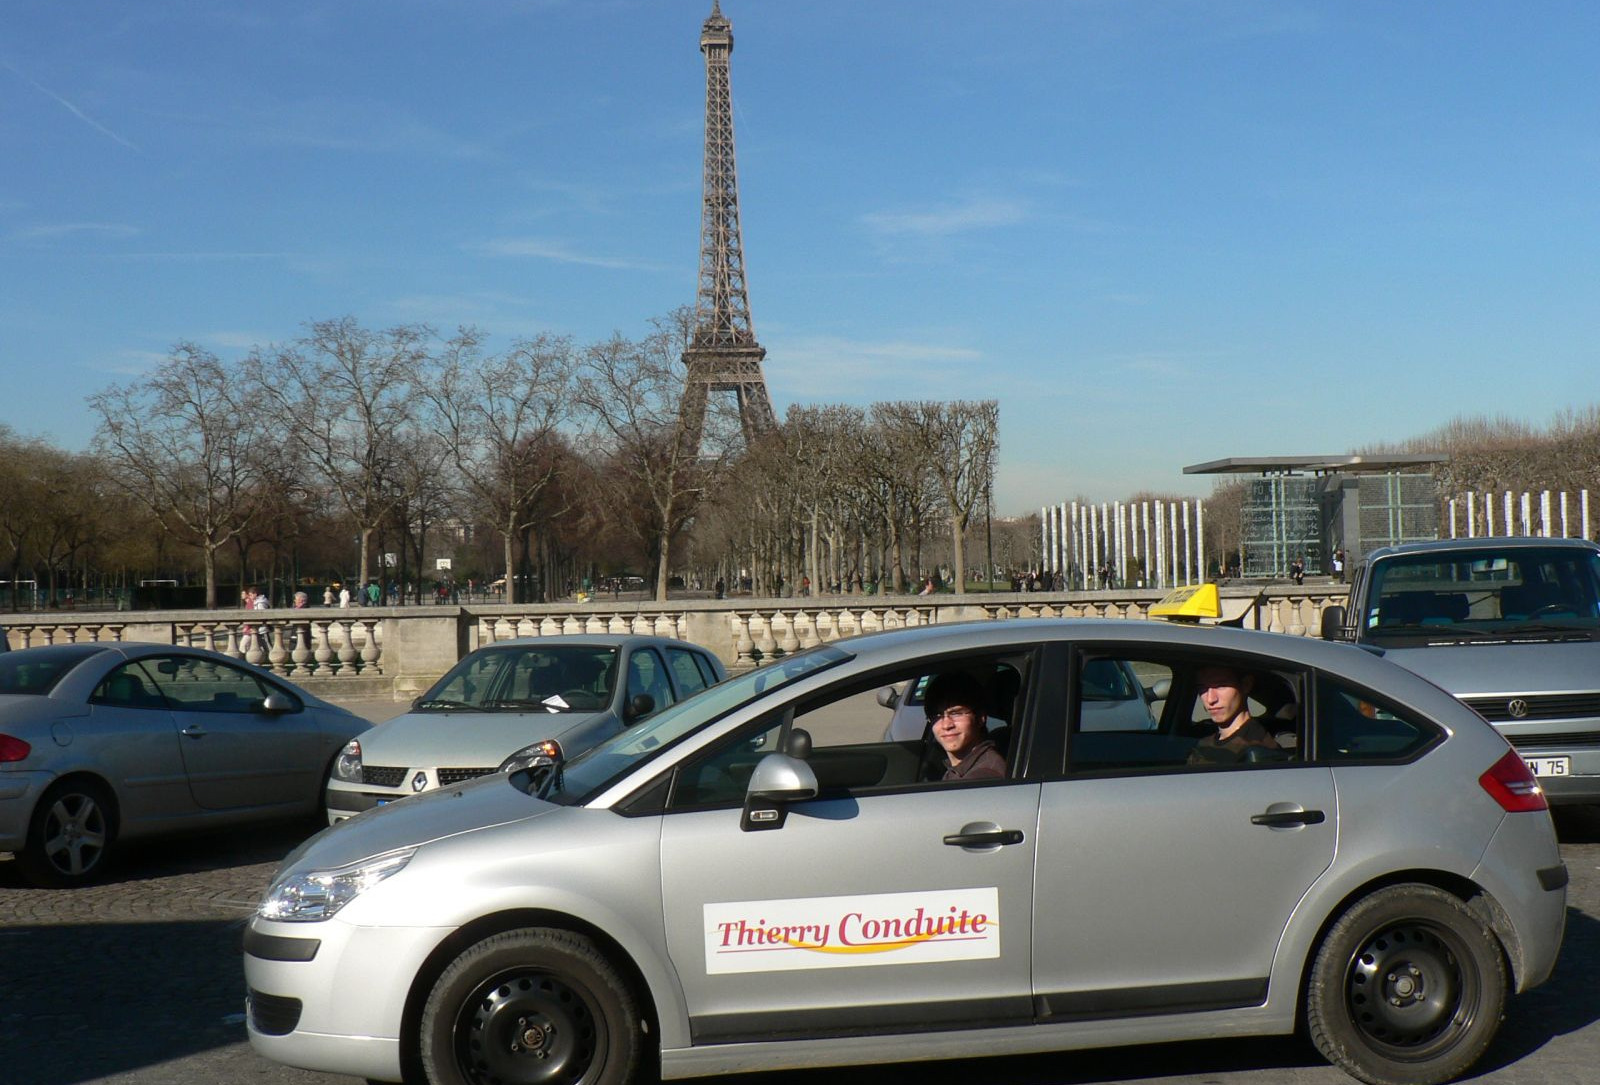 Véhicules Thierry Conduite devant Tour Eiffel